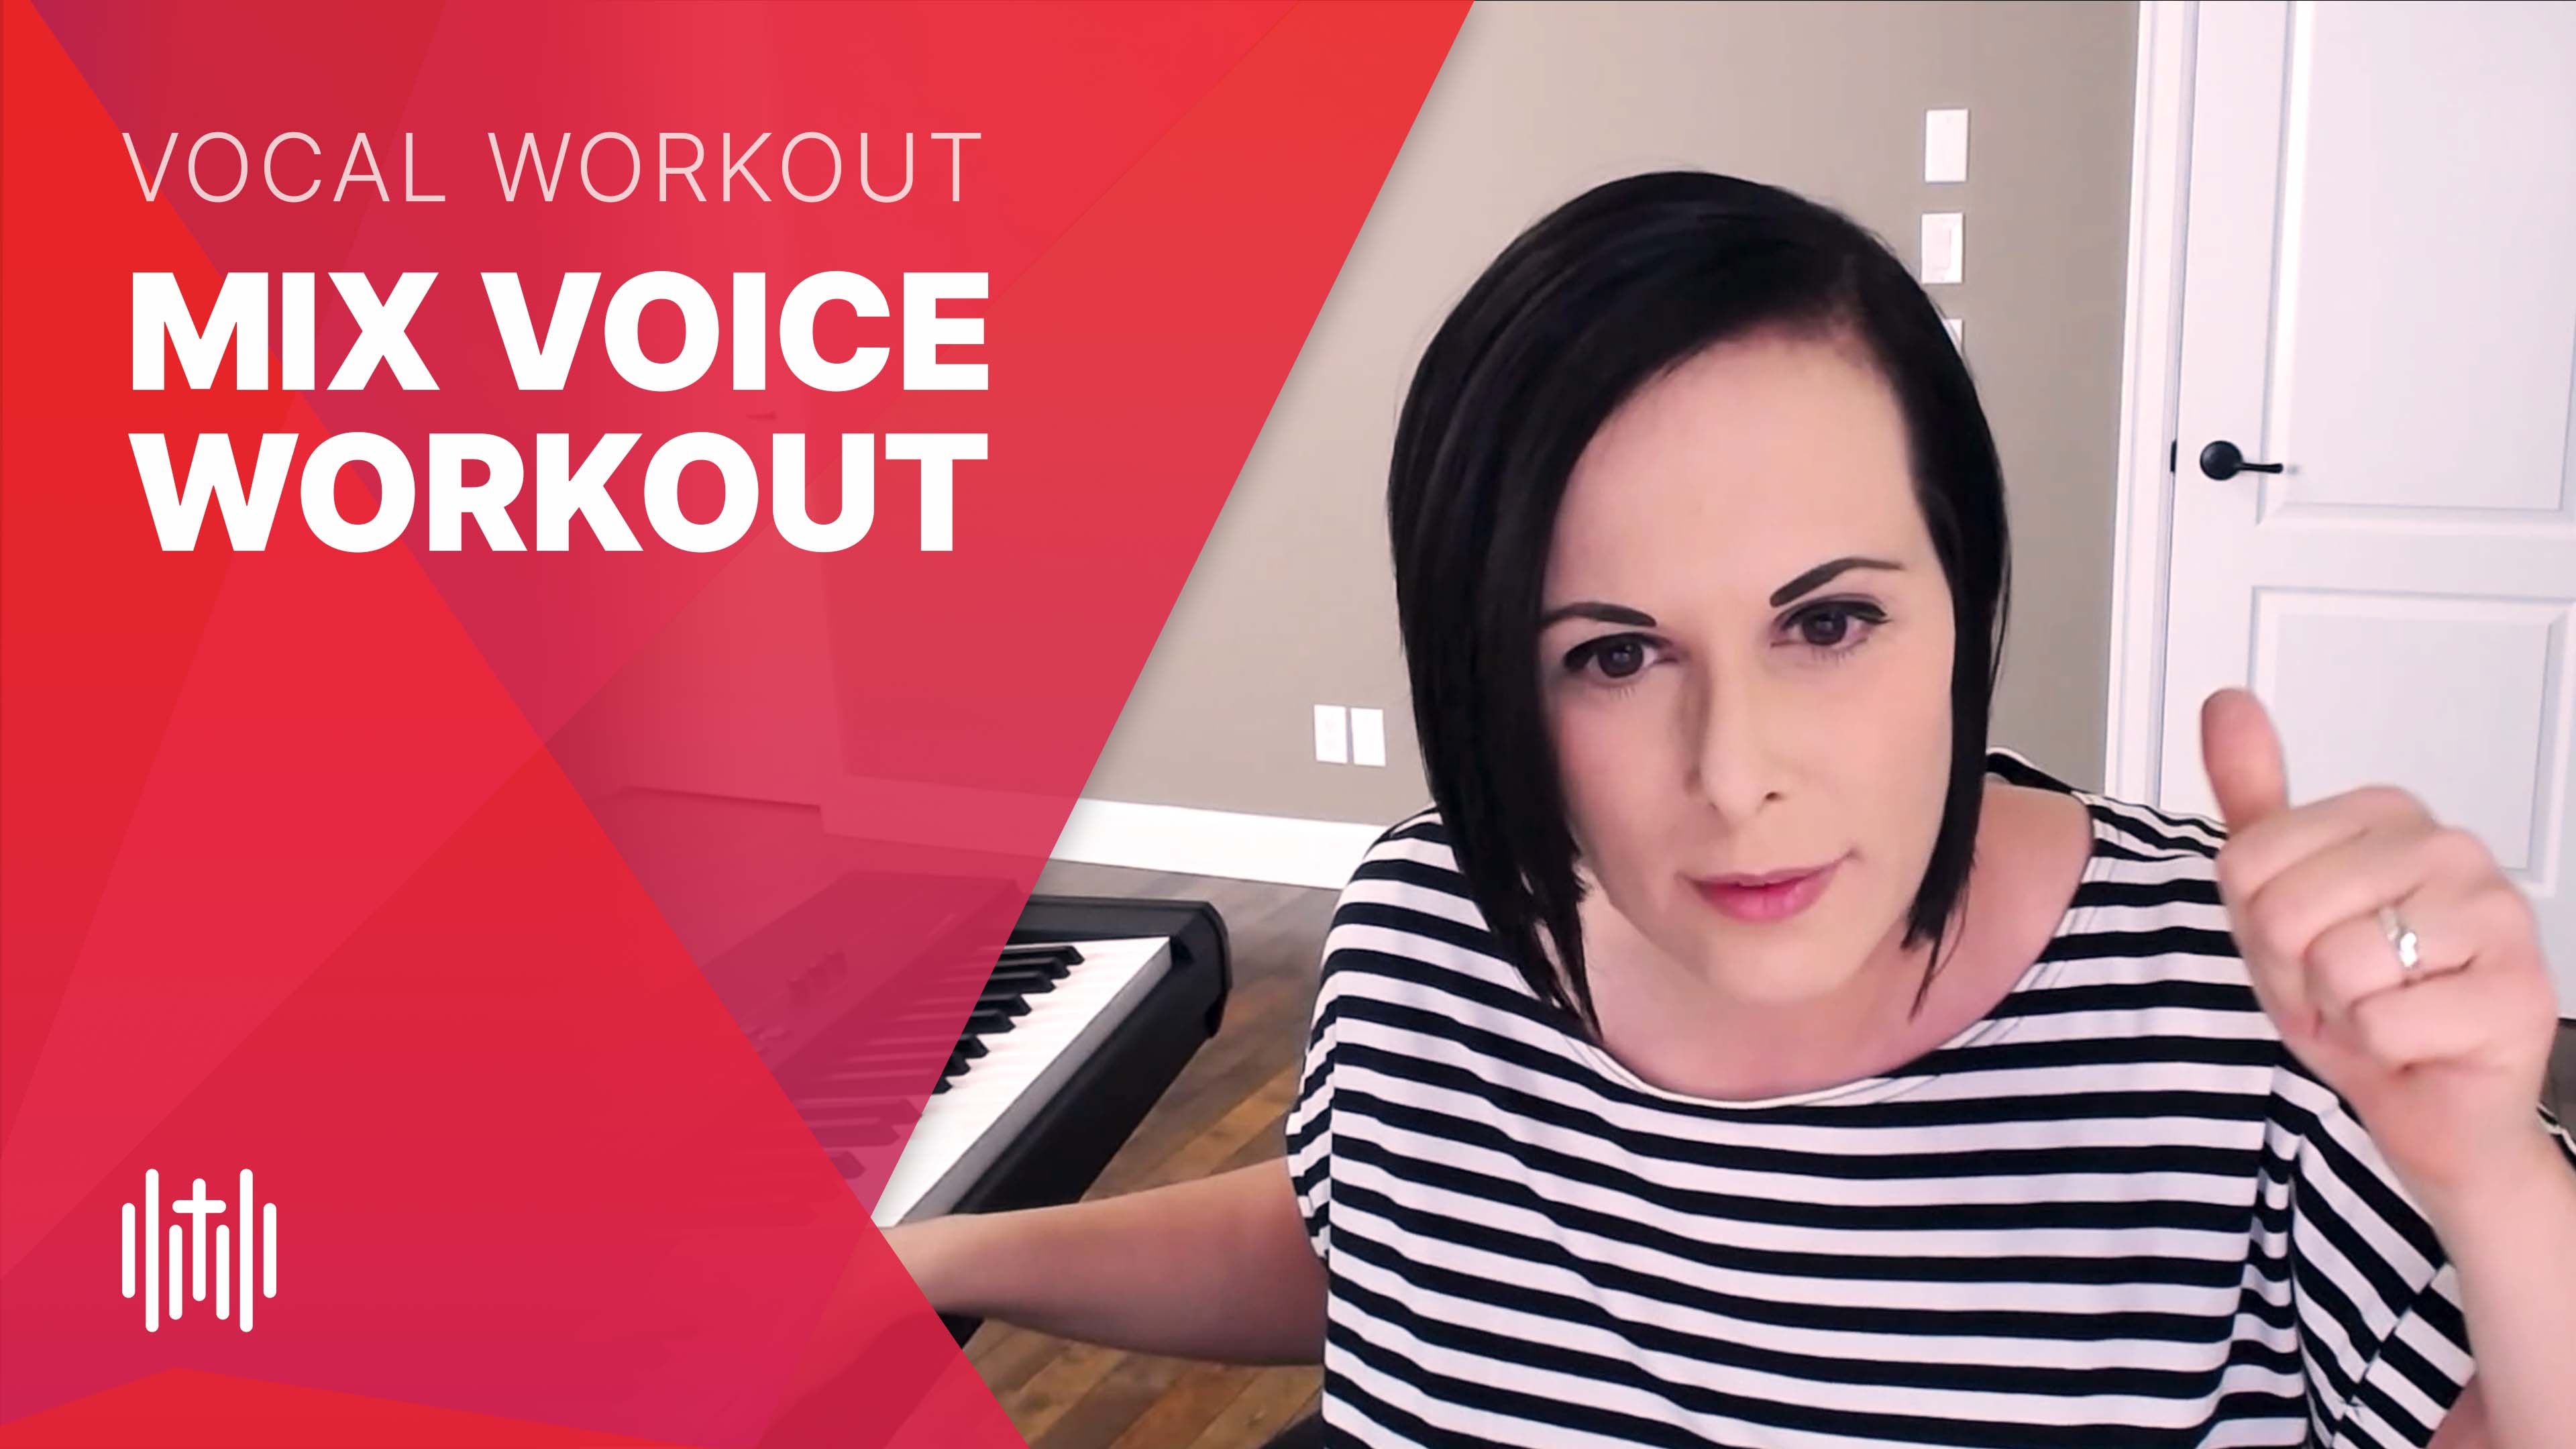 Mix Voice Workout